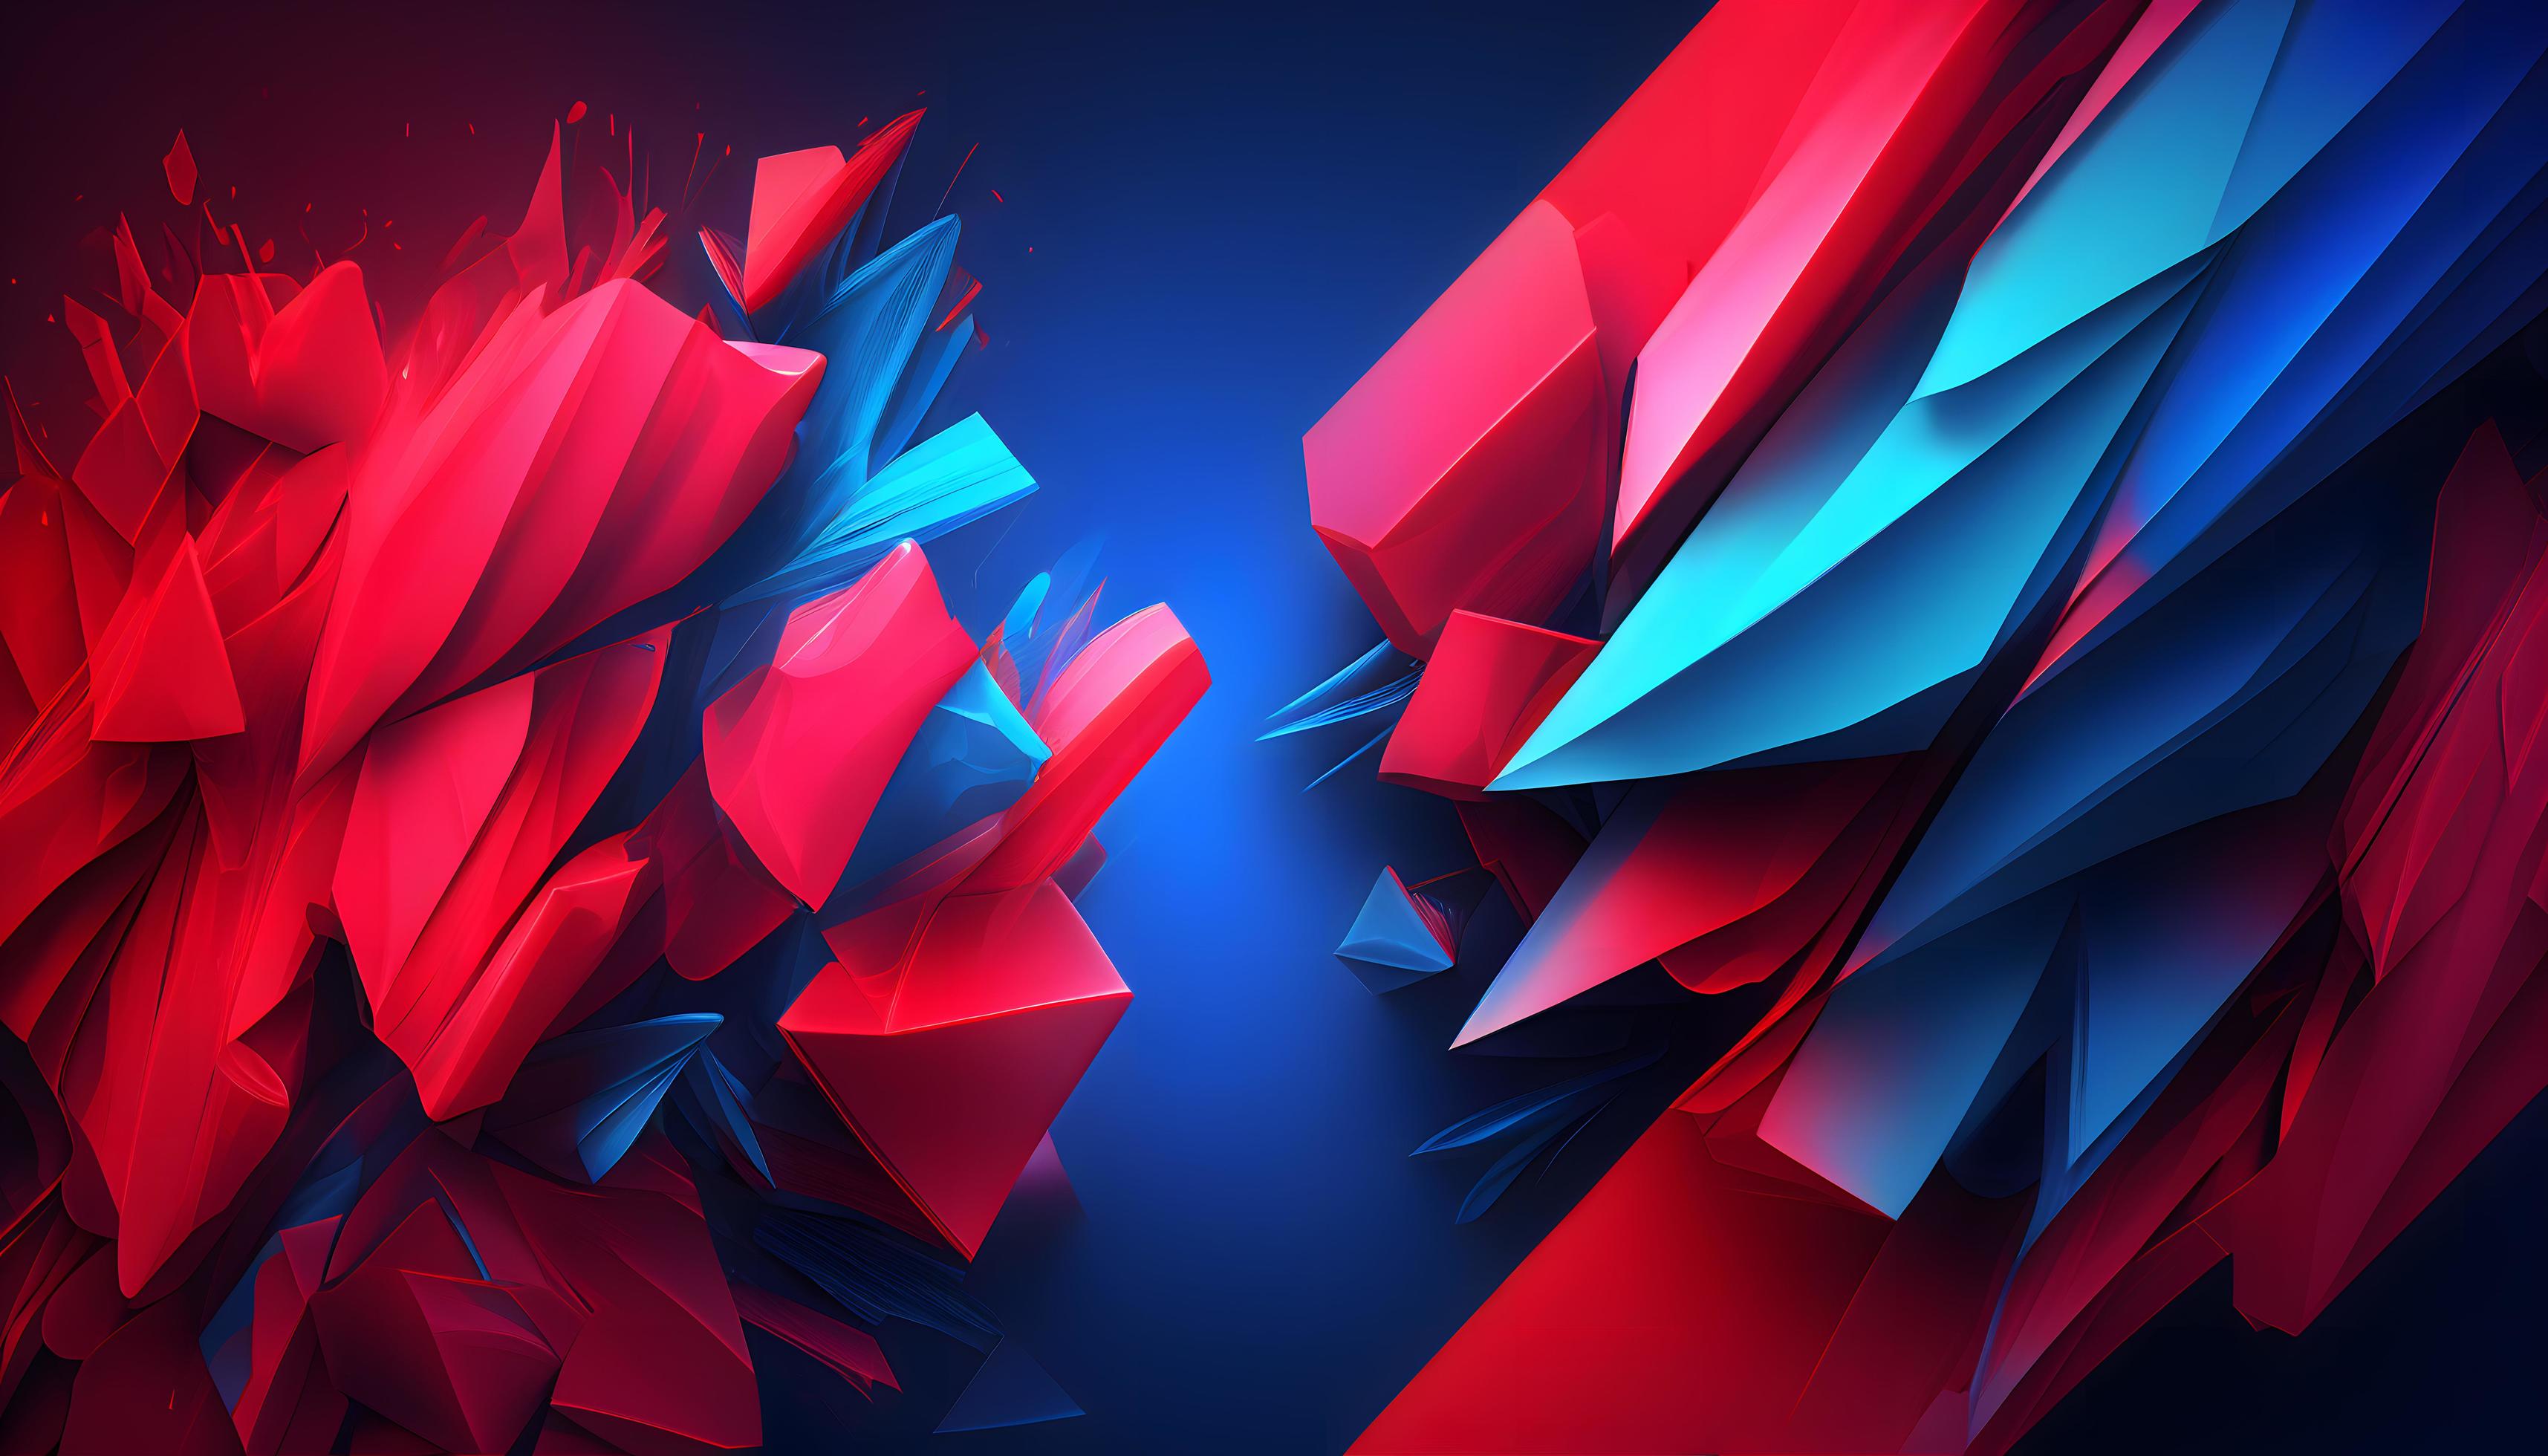 عکس زمینه باکیفیت لپتاپ ساخت هوش مصنوعی با طرح گرافیکی قرمز و آبی هندسی